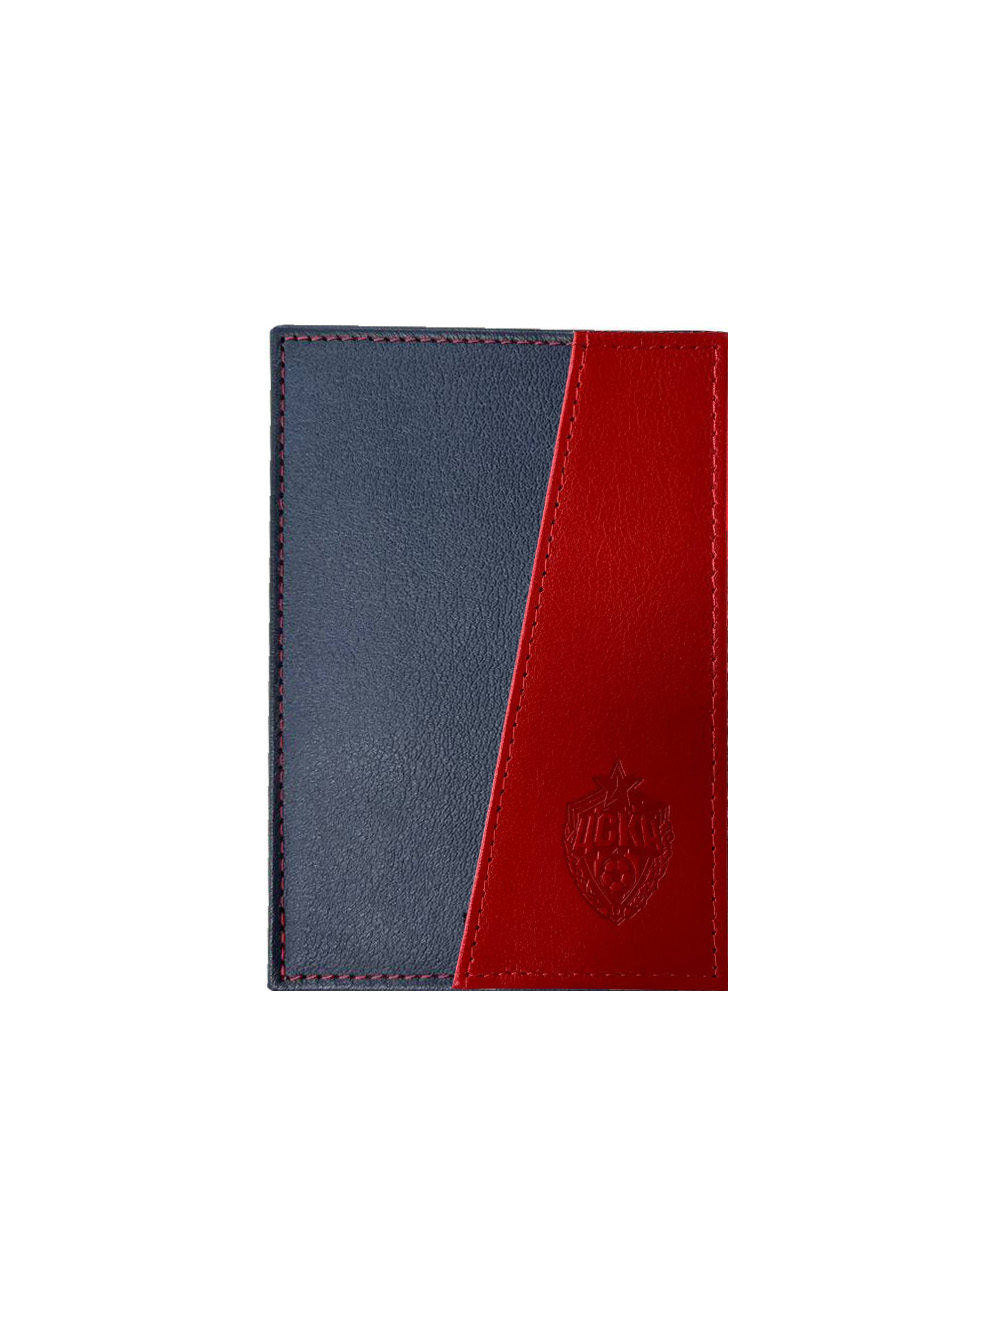 Обложка для паспорта, красный/синий